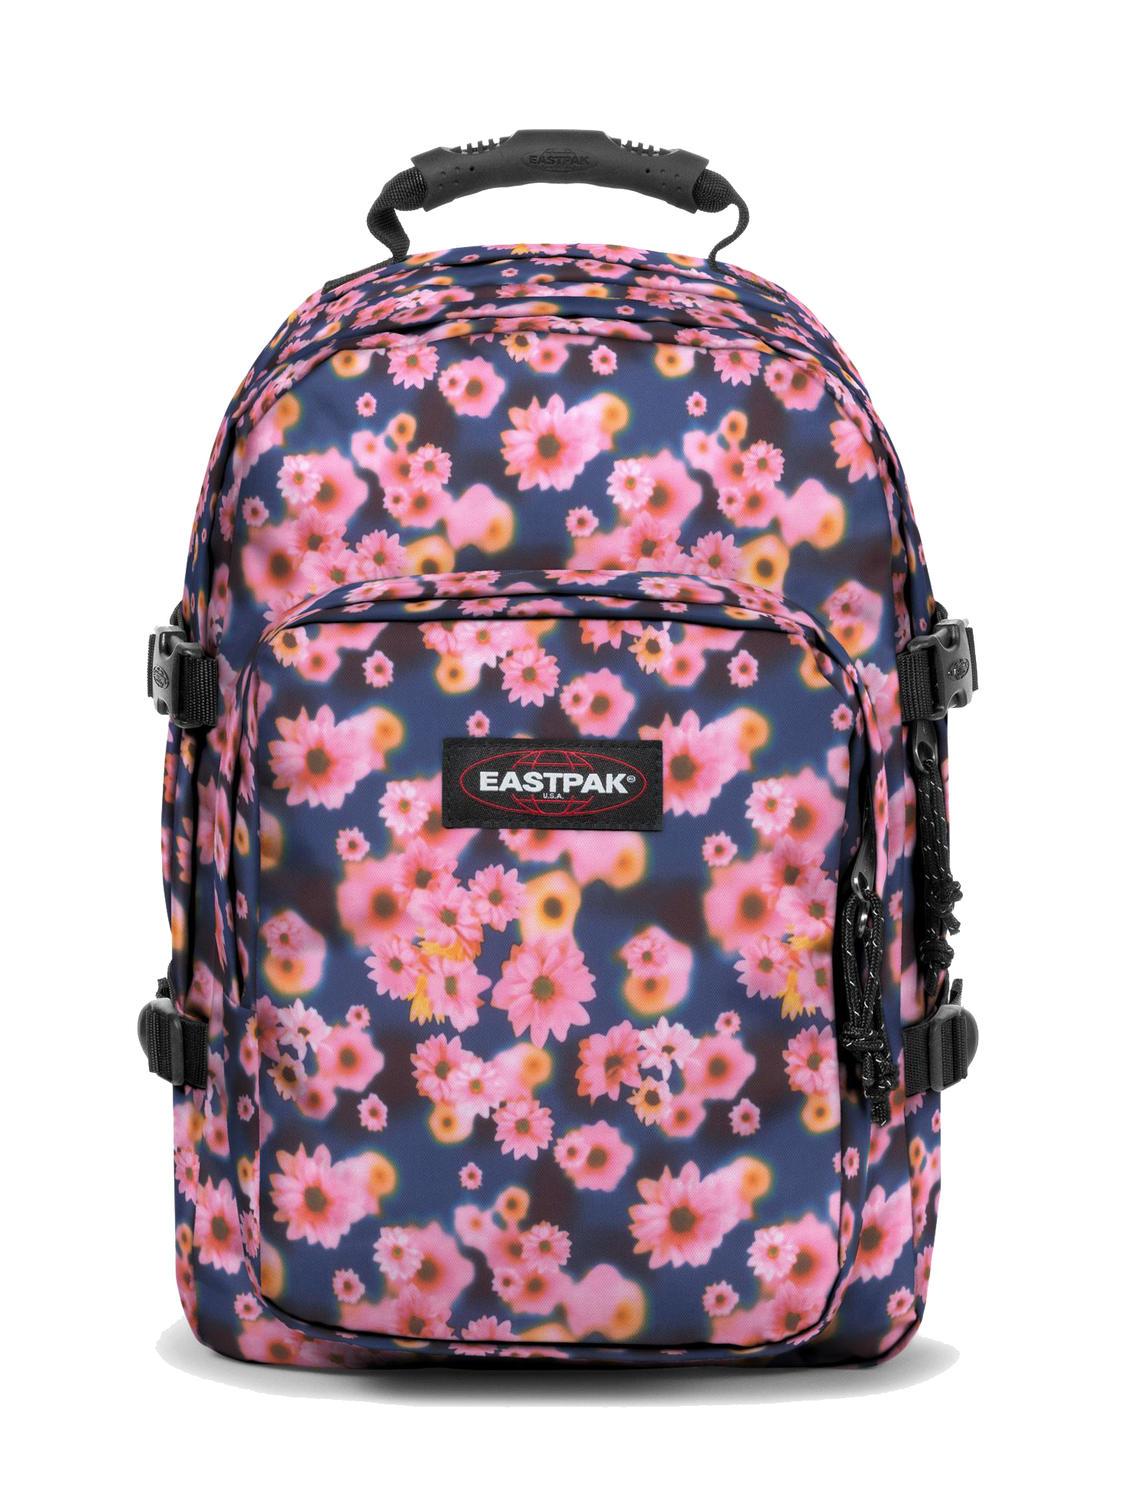 Le sac Eastpak, l'accessoire de mode incontournable de la rentrée scolaire  de vos ados